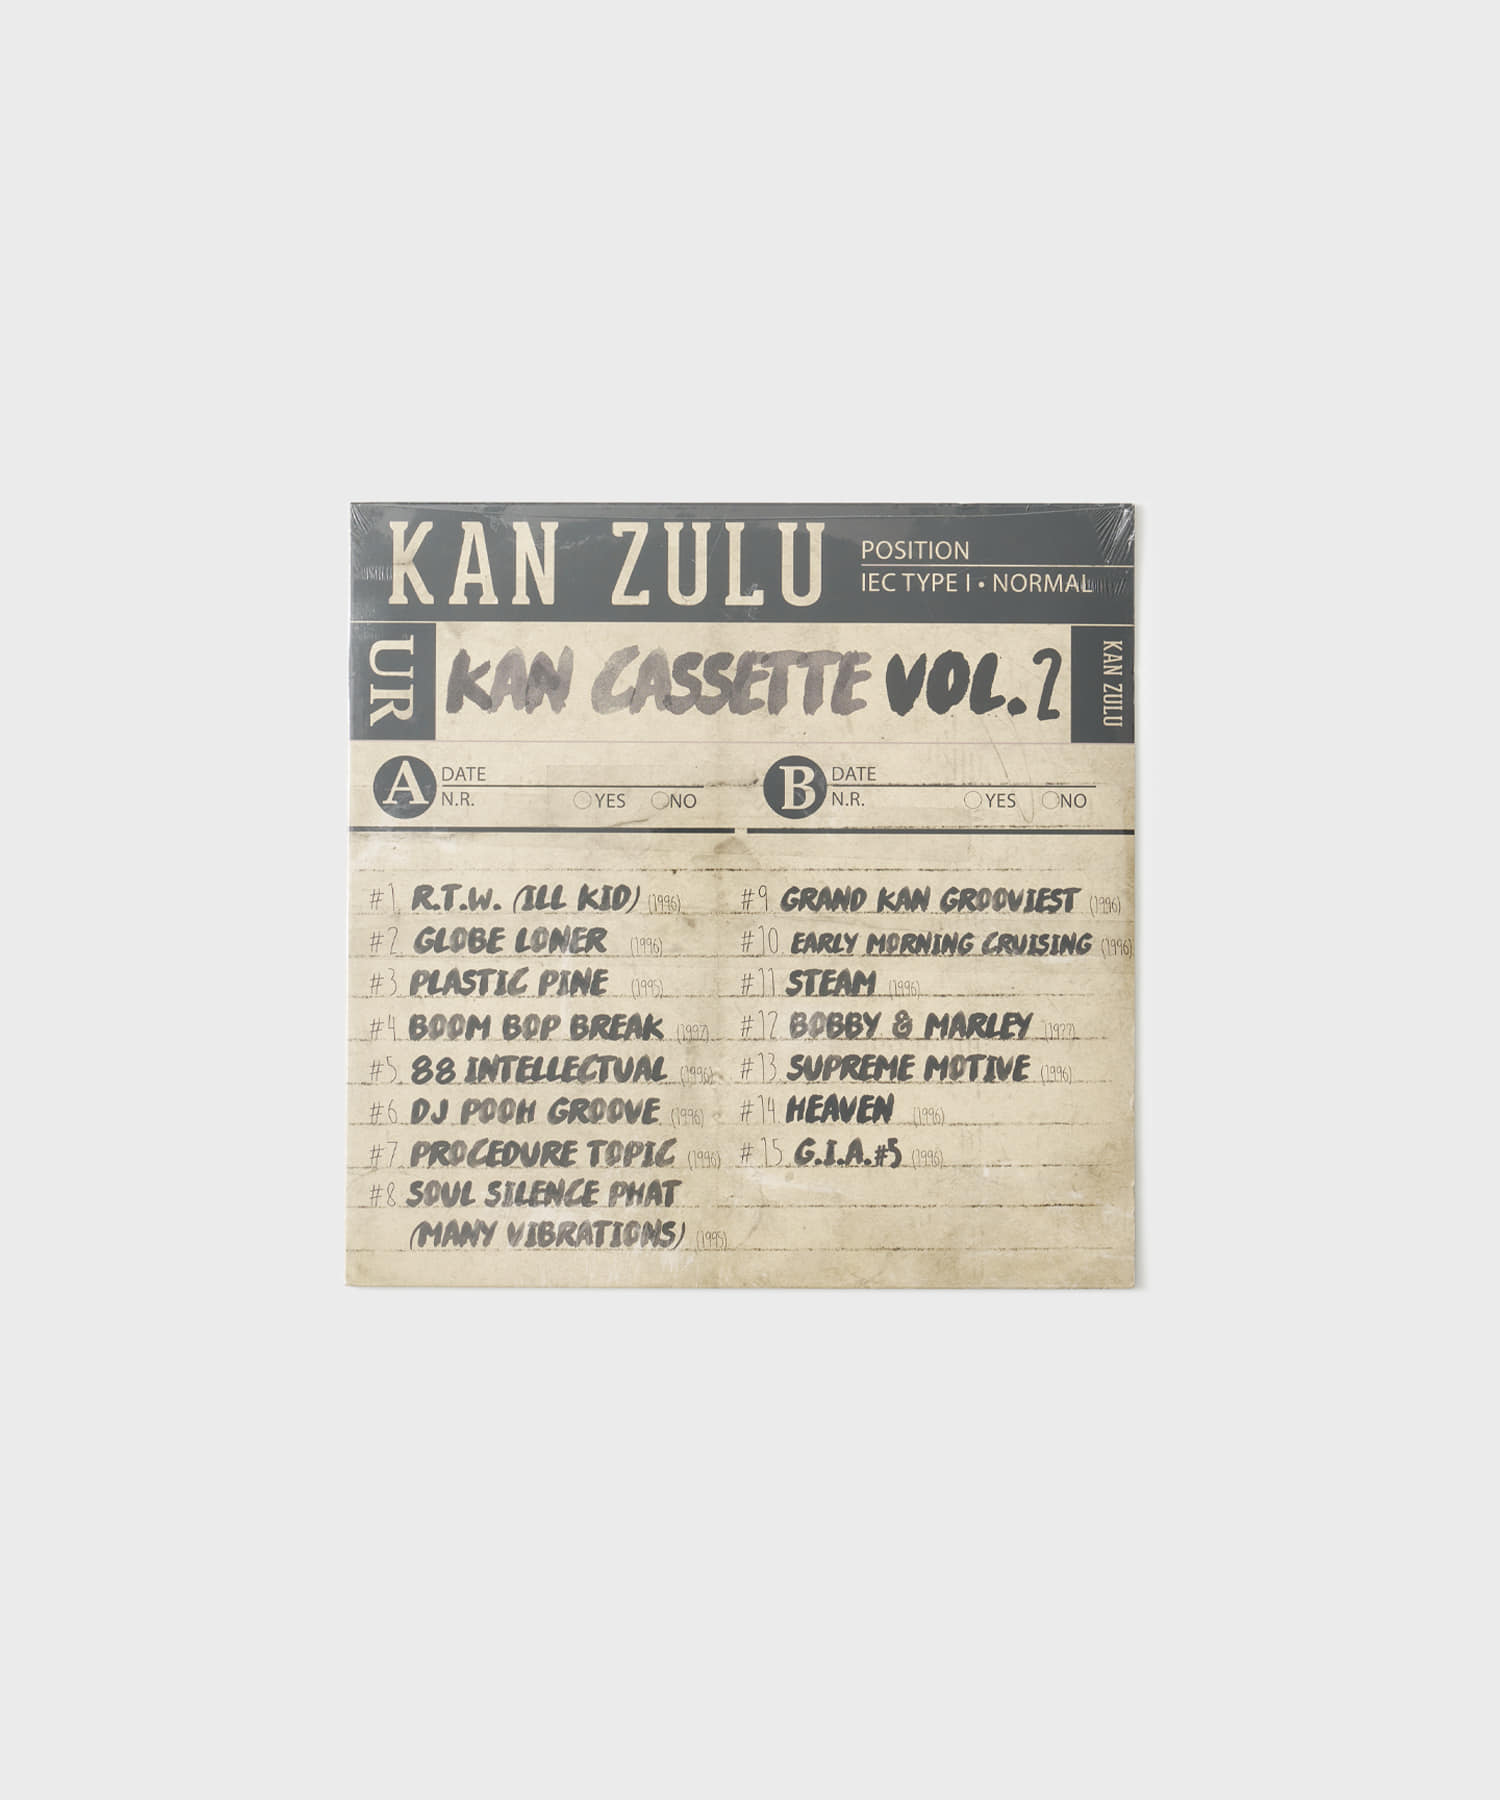 Kan Zulu - Kan Cassette Vol.2